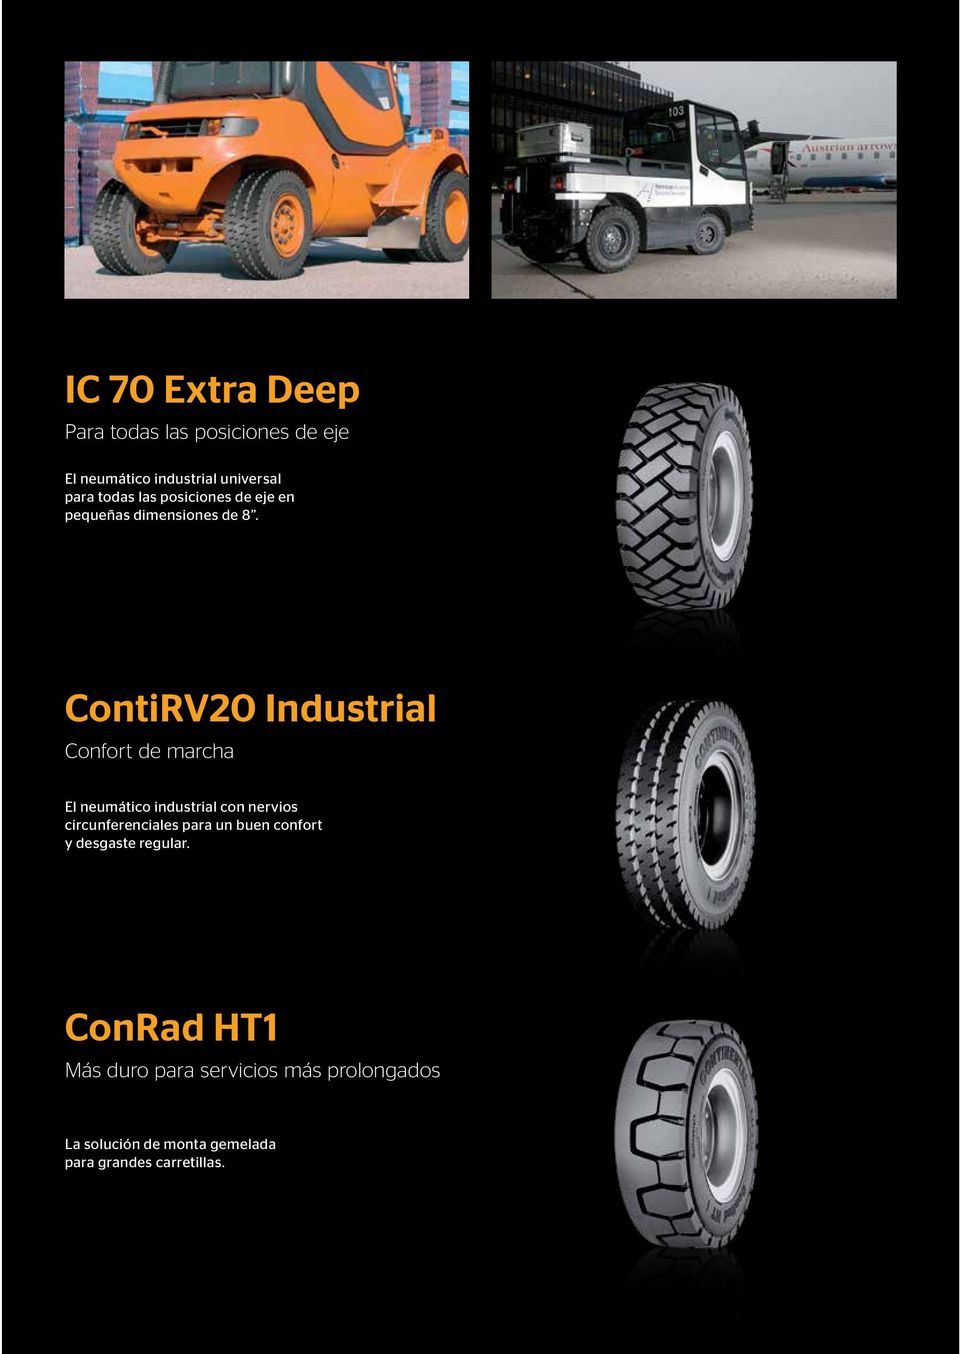 ContiRV20 Industrial Confort de marcha El neumático industrial con nervios circunferenciales